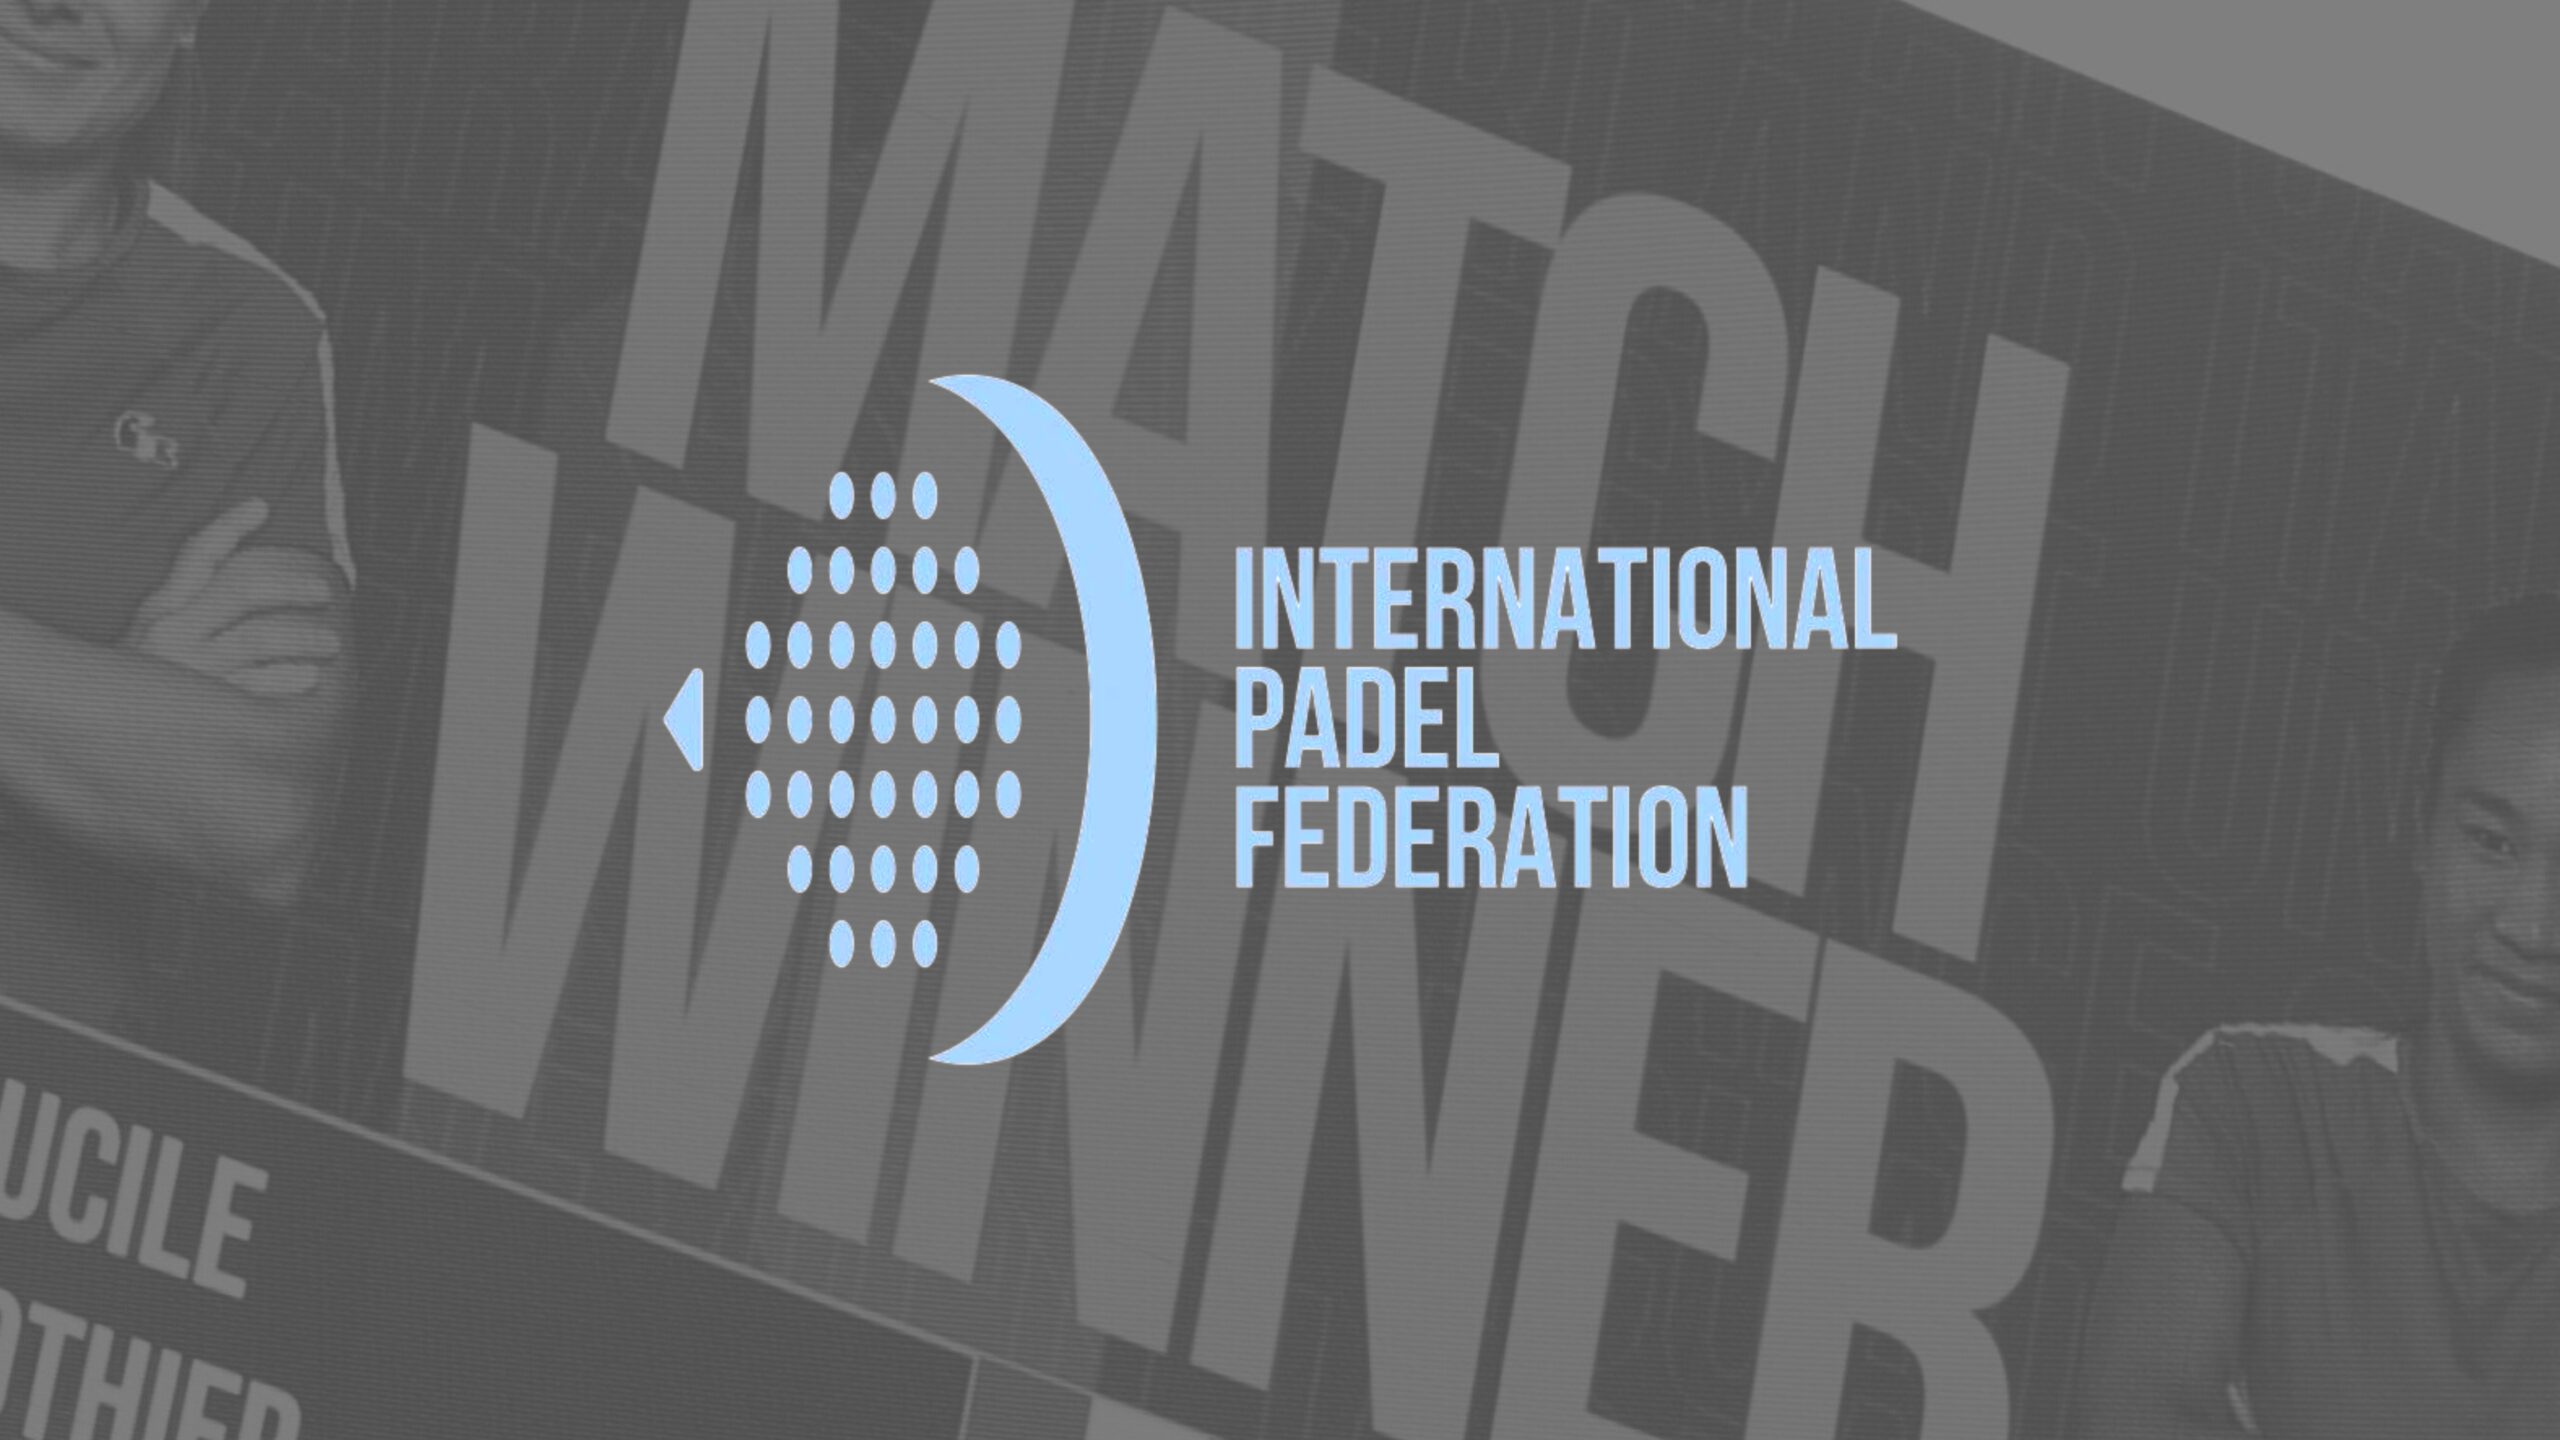 ”Försöket till övertagande av padel av ITF som avvisats av det internationella tennissamfundet”